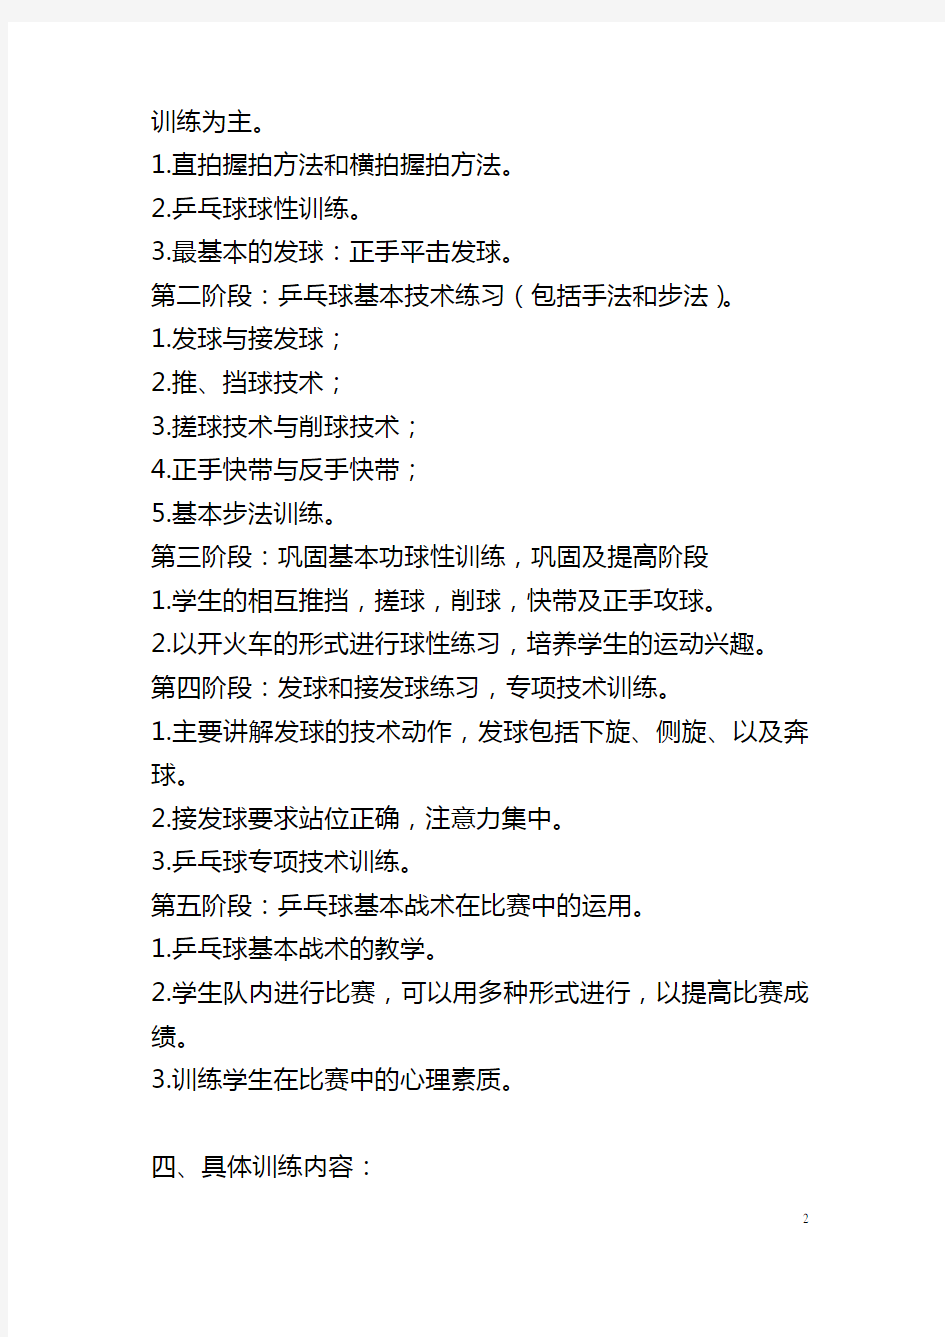 龙江小学乒乓球社团活动计划与记录